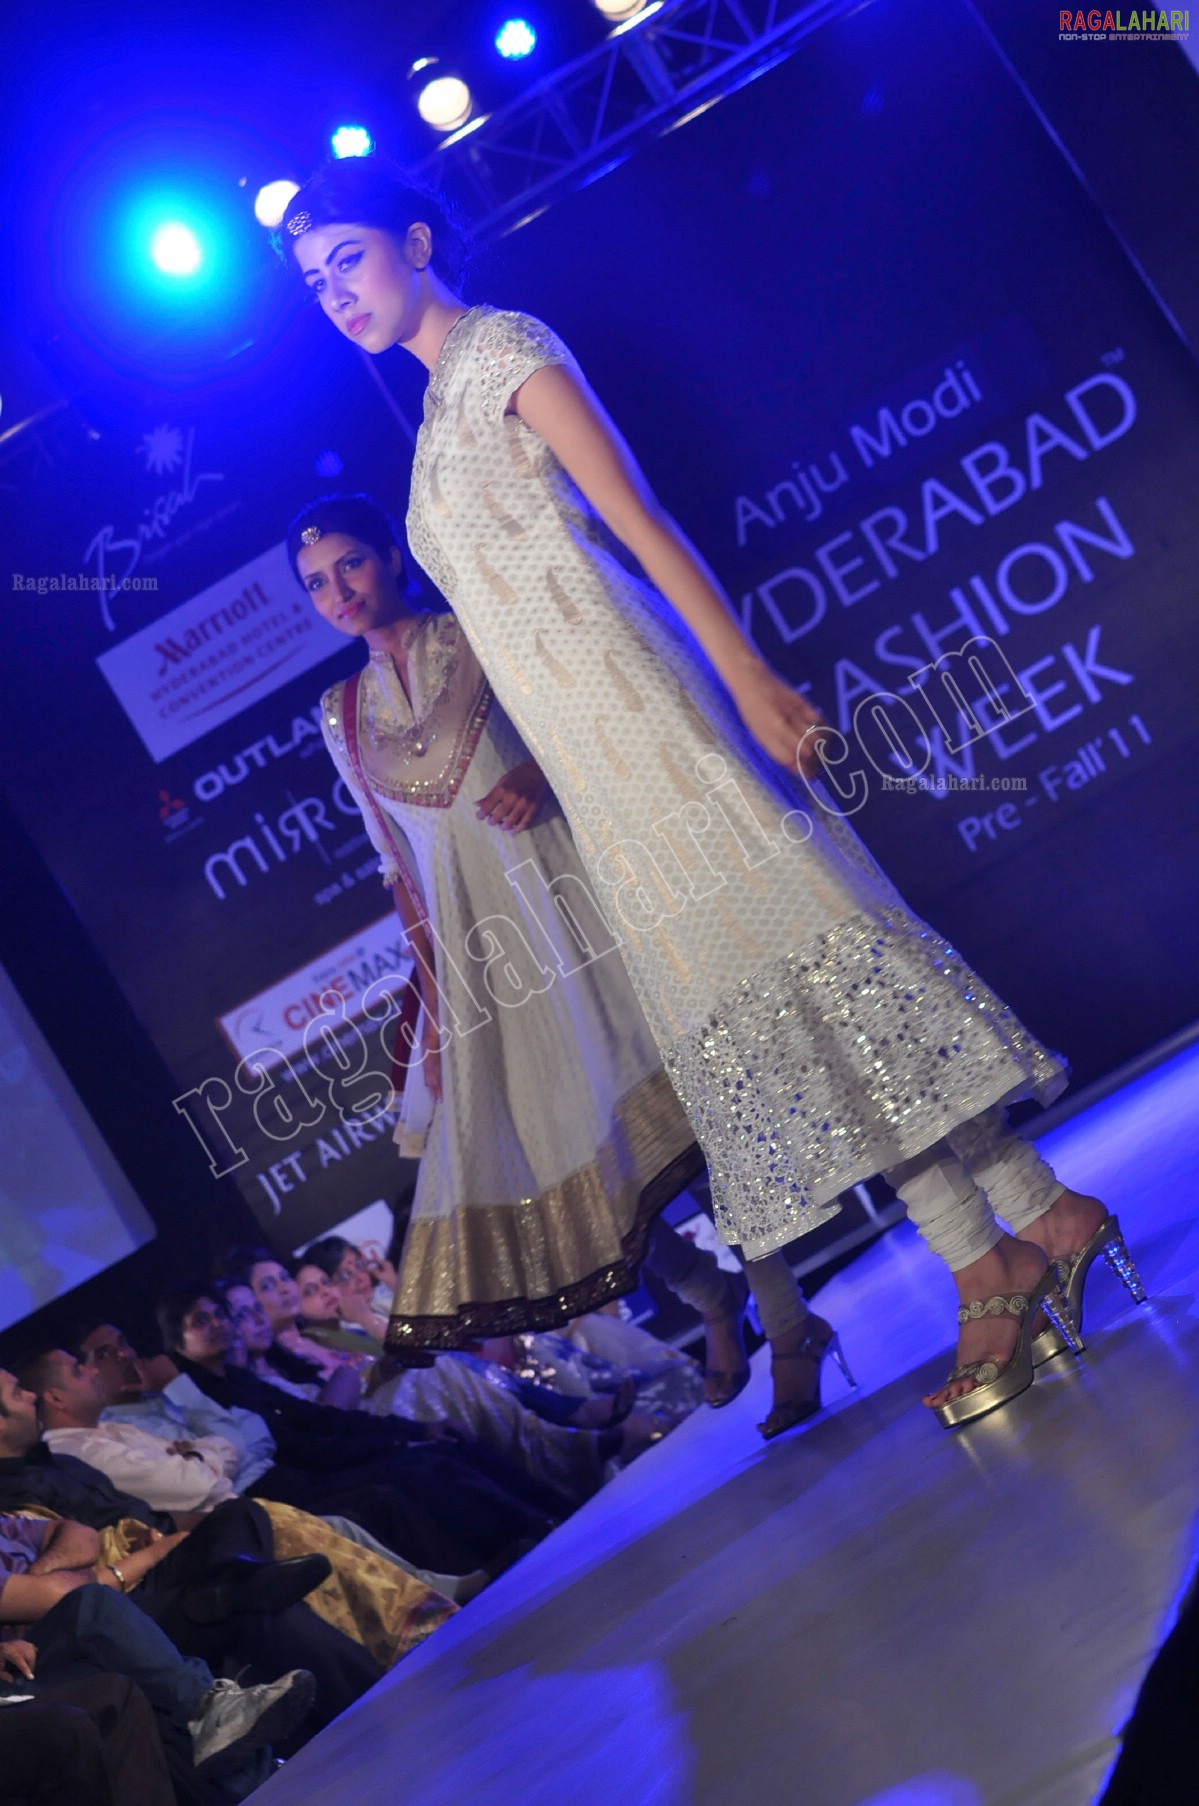 Hyderabad Fashion Week Pre - Fall' 2011 (Day 3)